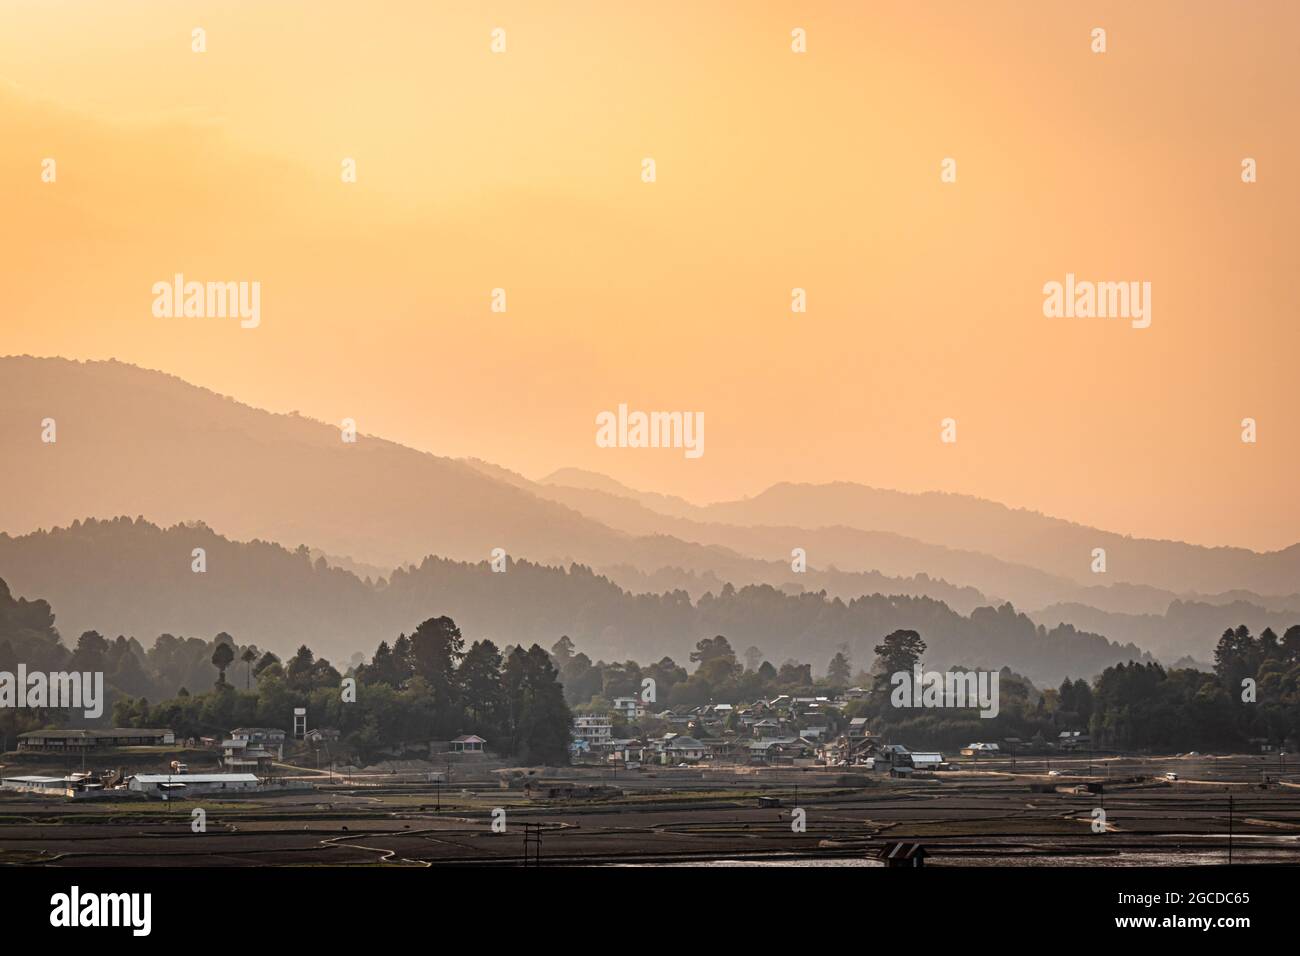 couches de montagne avec village au pied et ciel orange du matin à l'aube image est prise à ziro arunachal pradesh inde. Banque D'Images